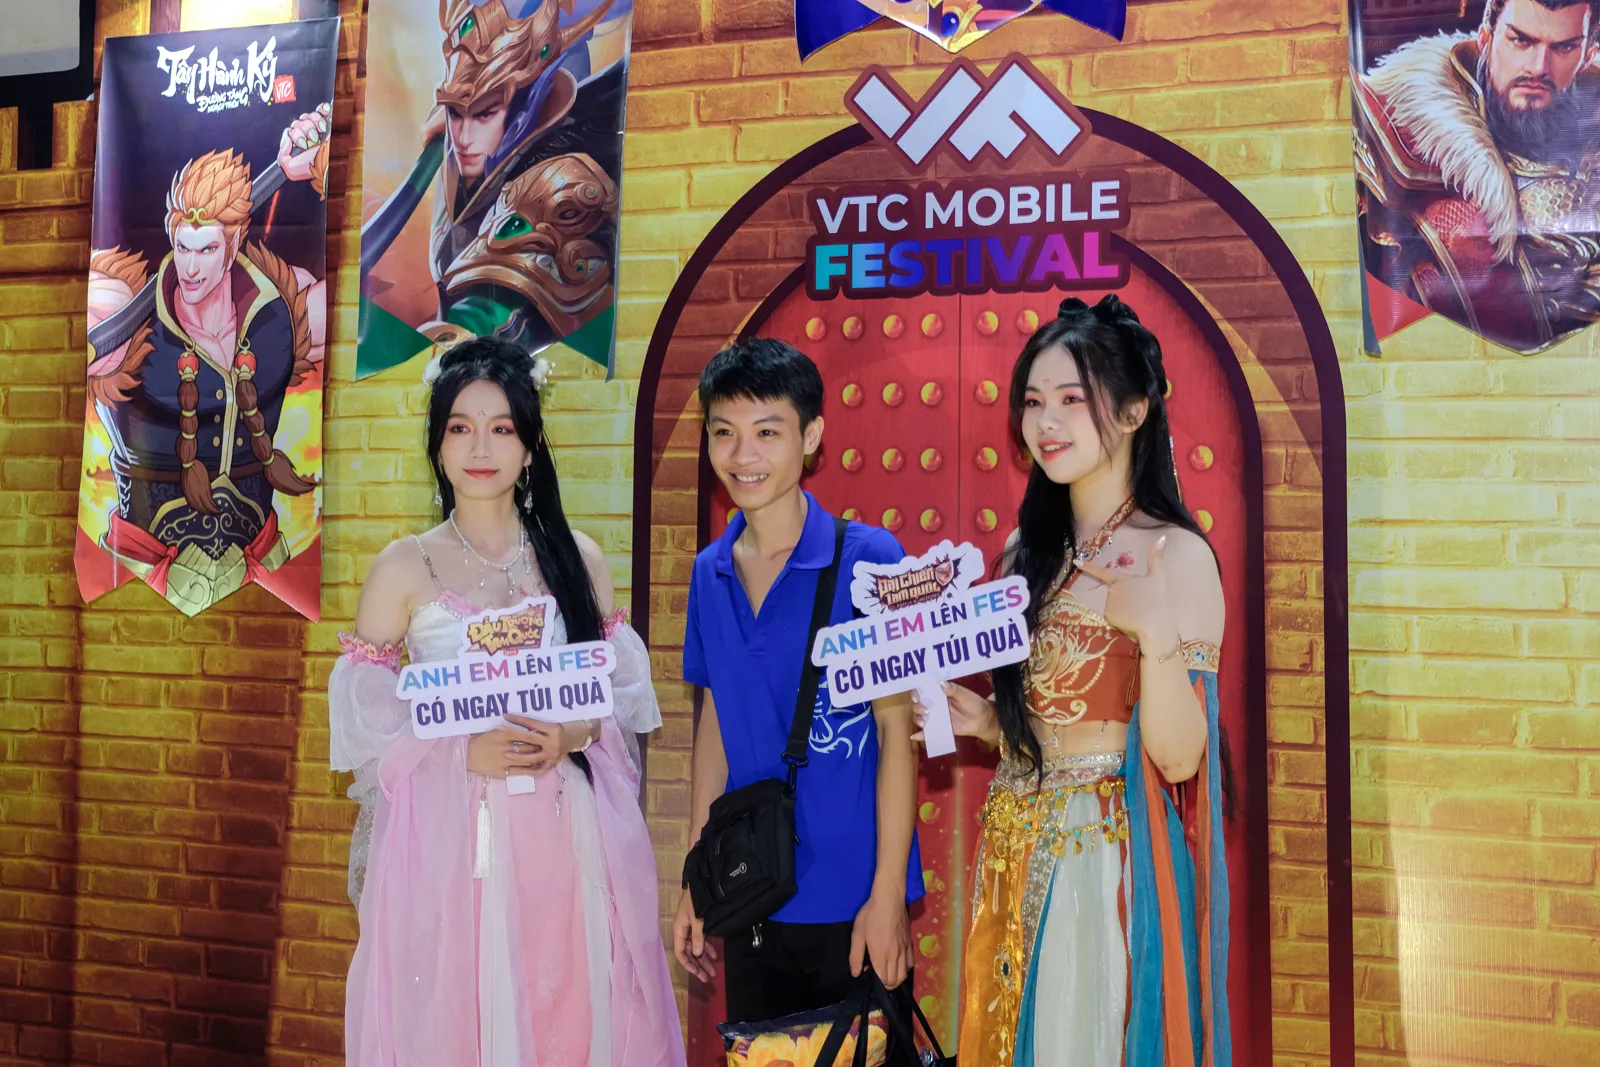 VTC Mobile Festival mmosite 5 MMOSITE - Thông tin công nghệ, review, thủ thuật PC, gaming